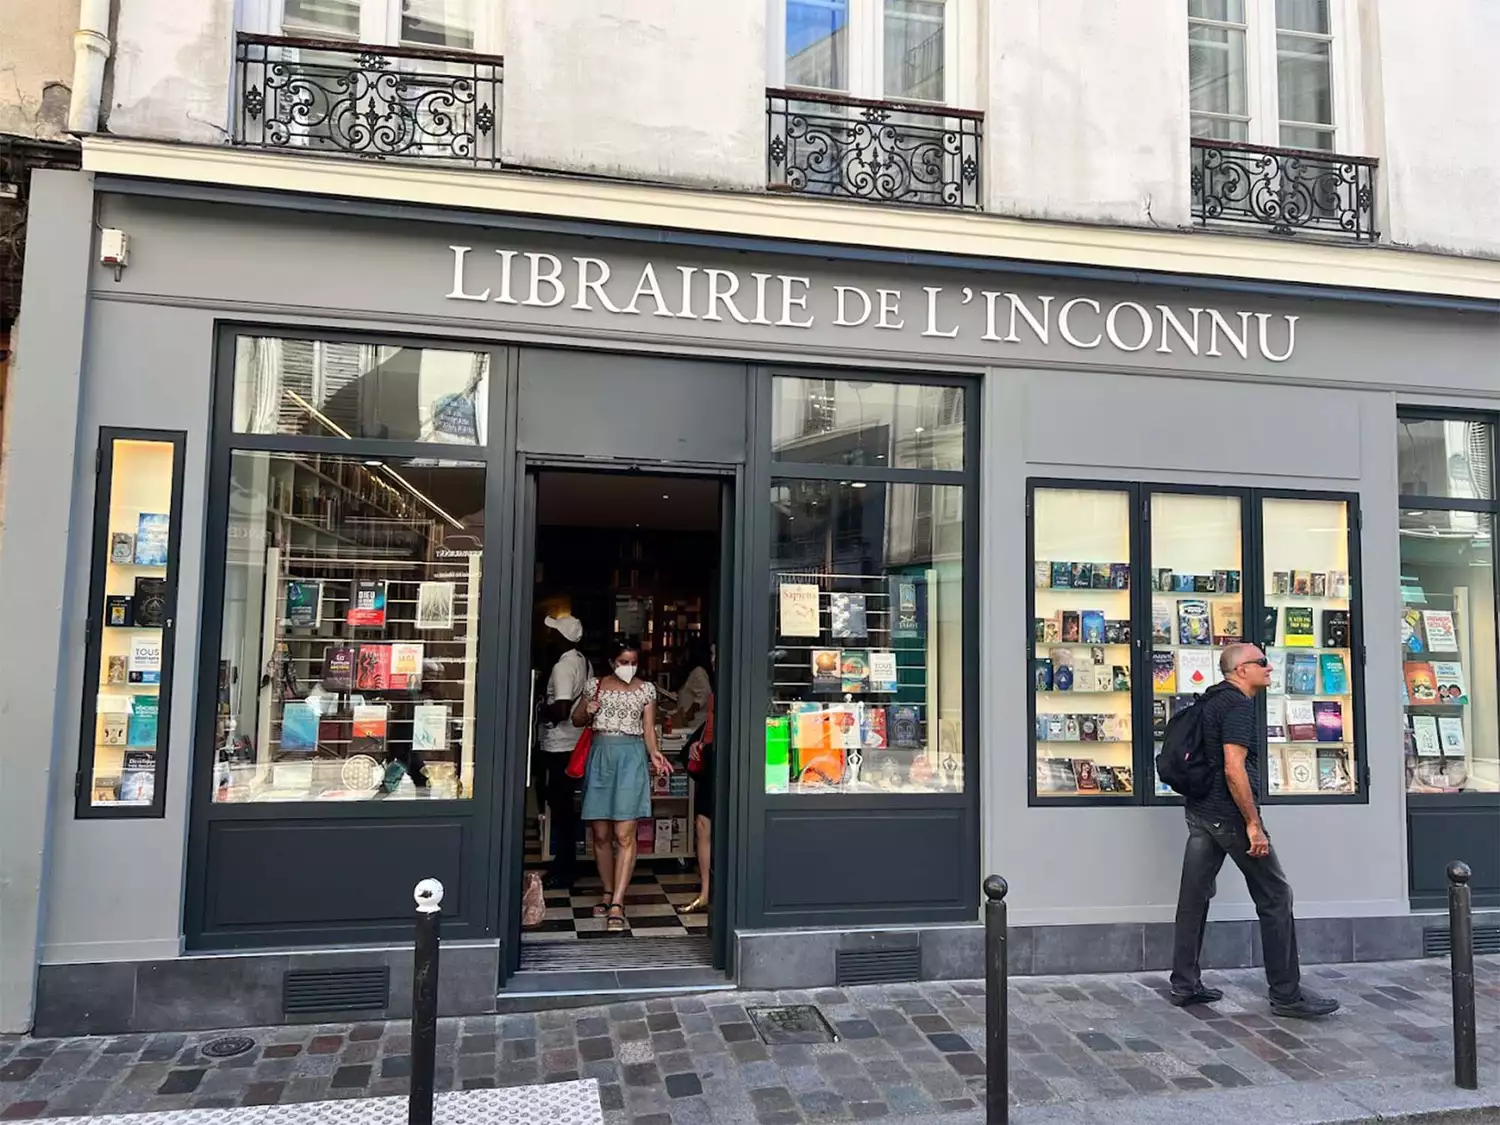 La Librarie De L'Inconnu storefront.